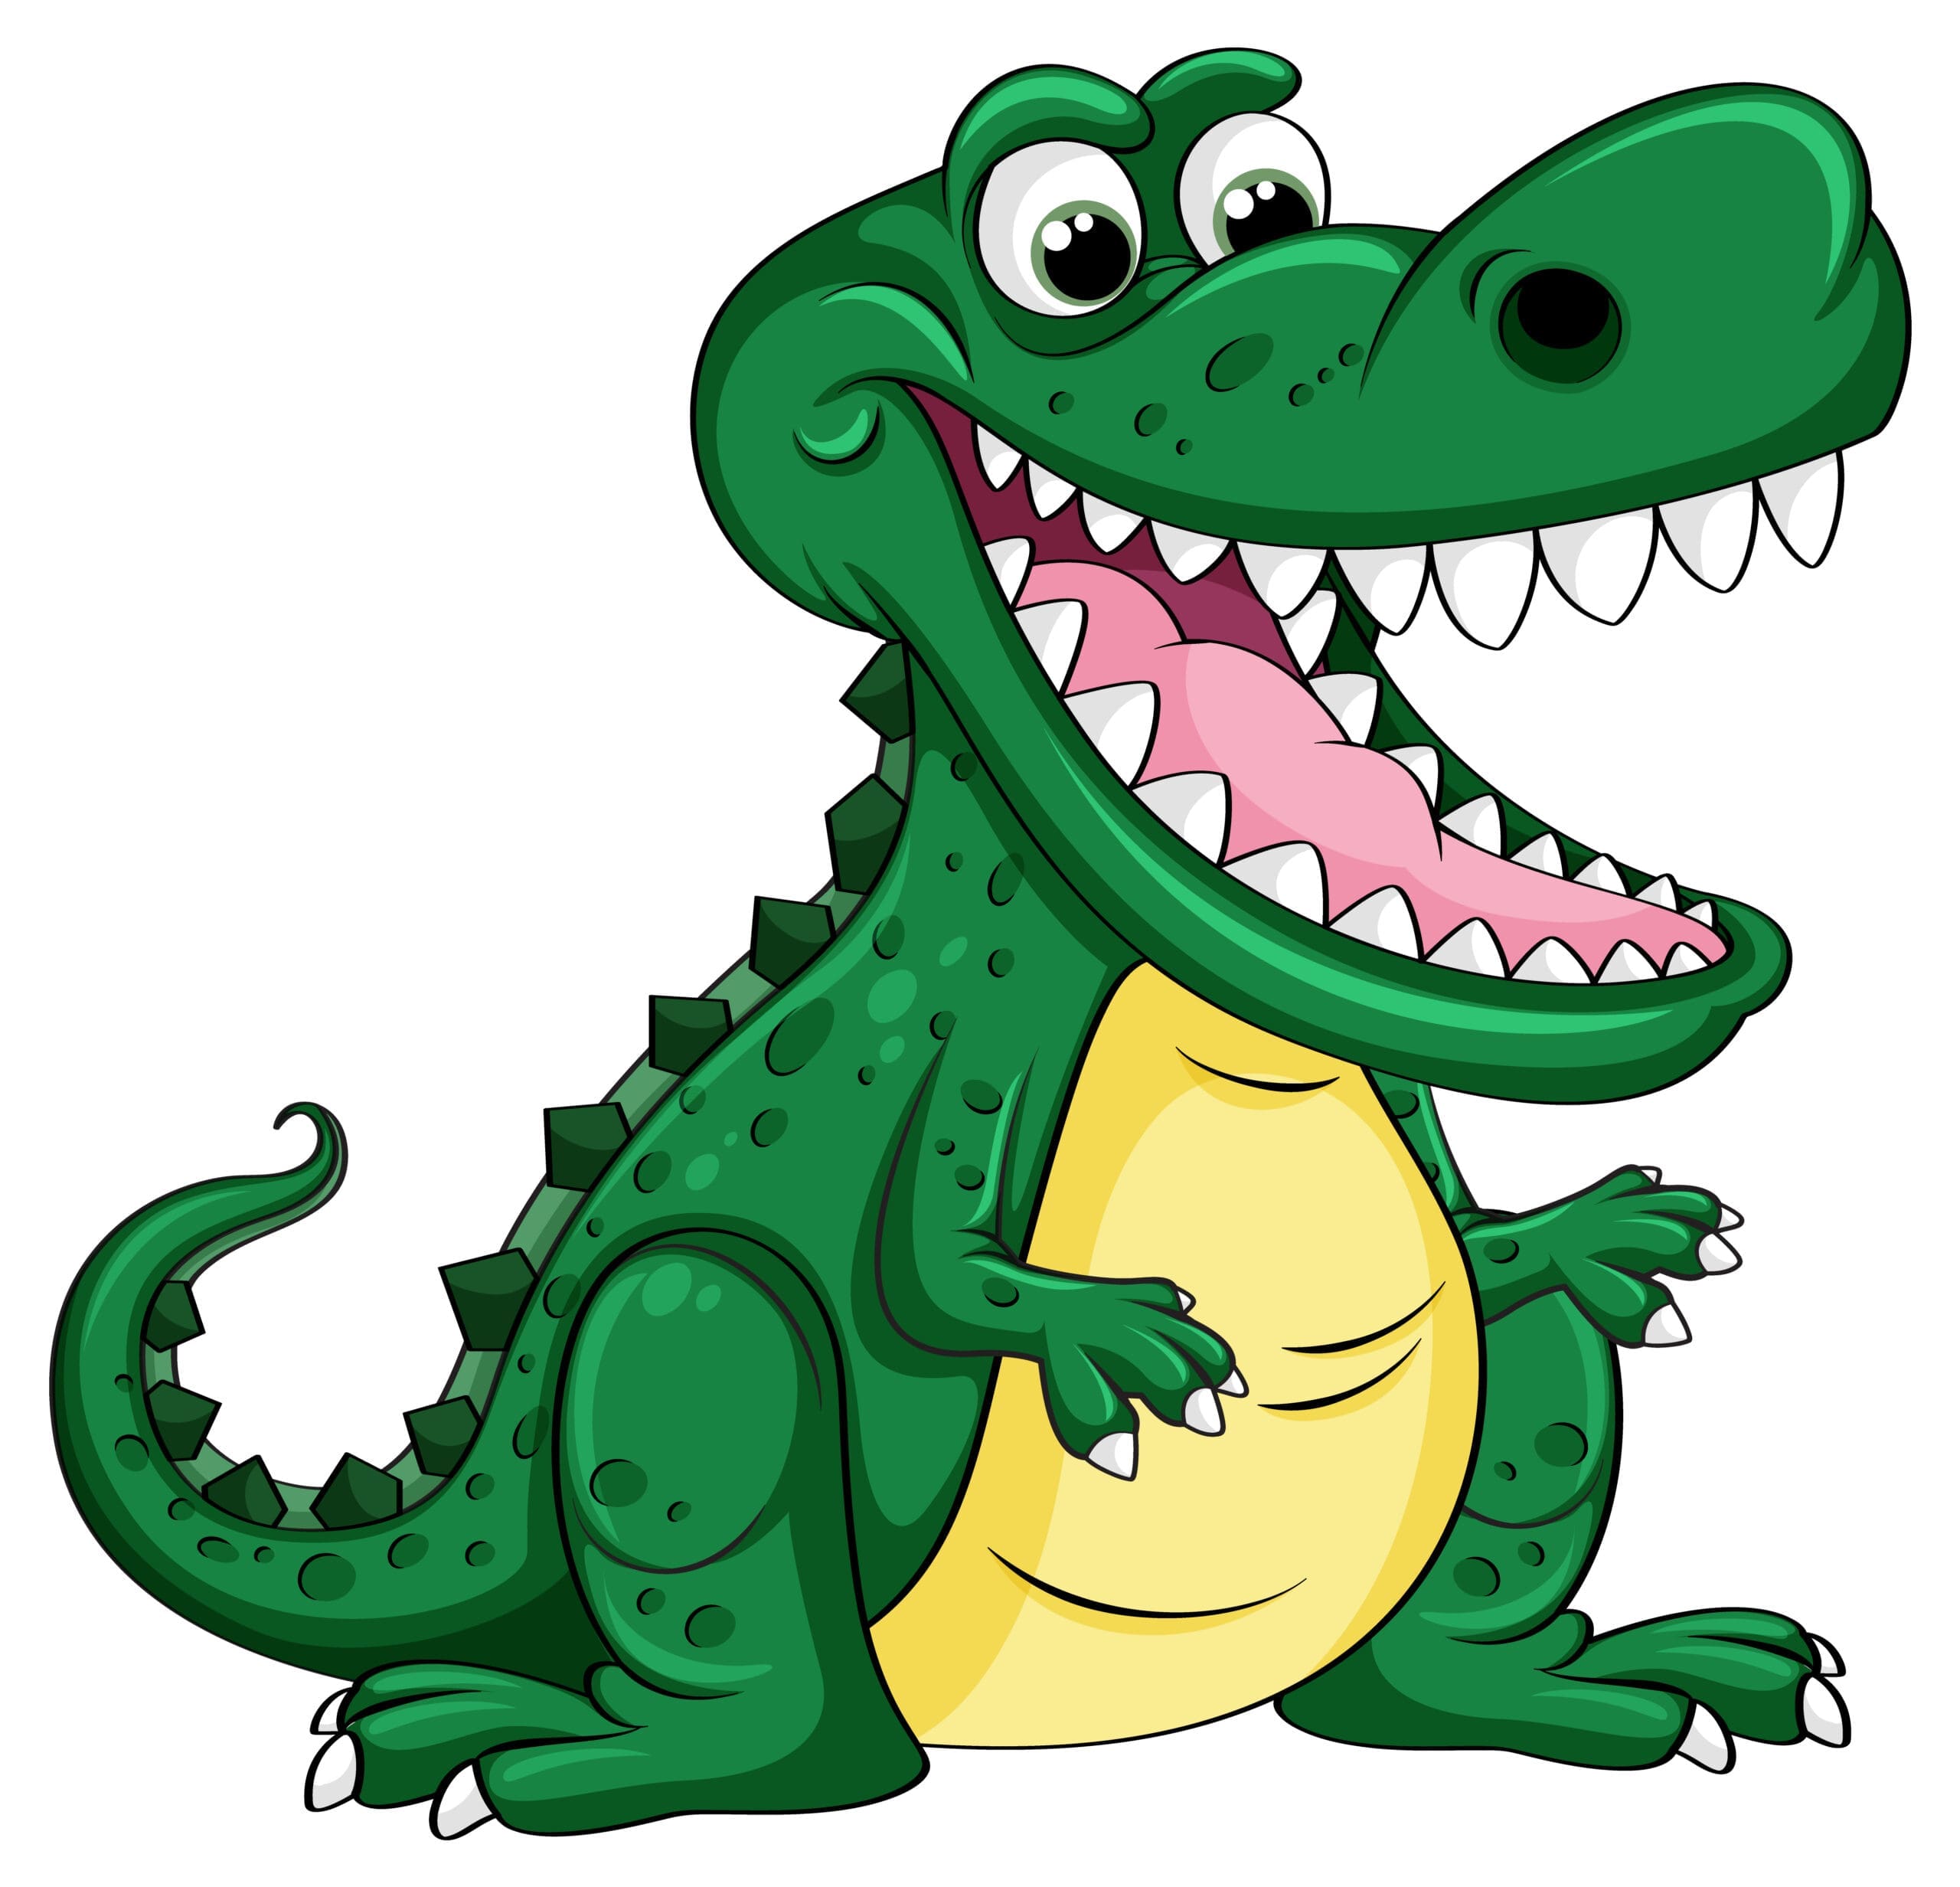 Funny Cartoon Crocodile Character